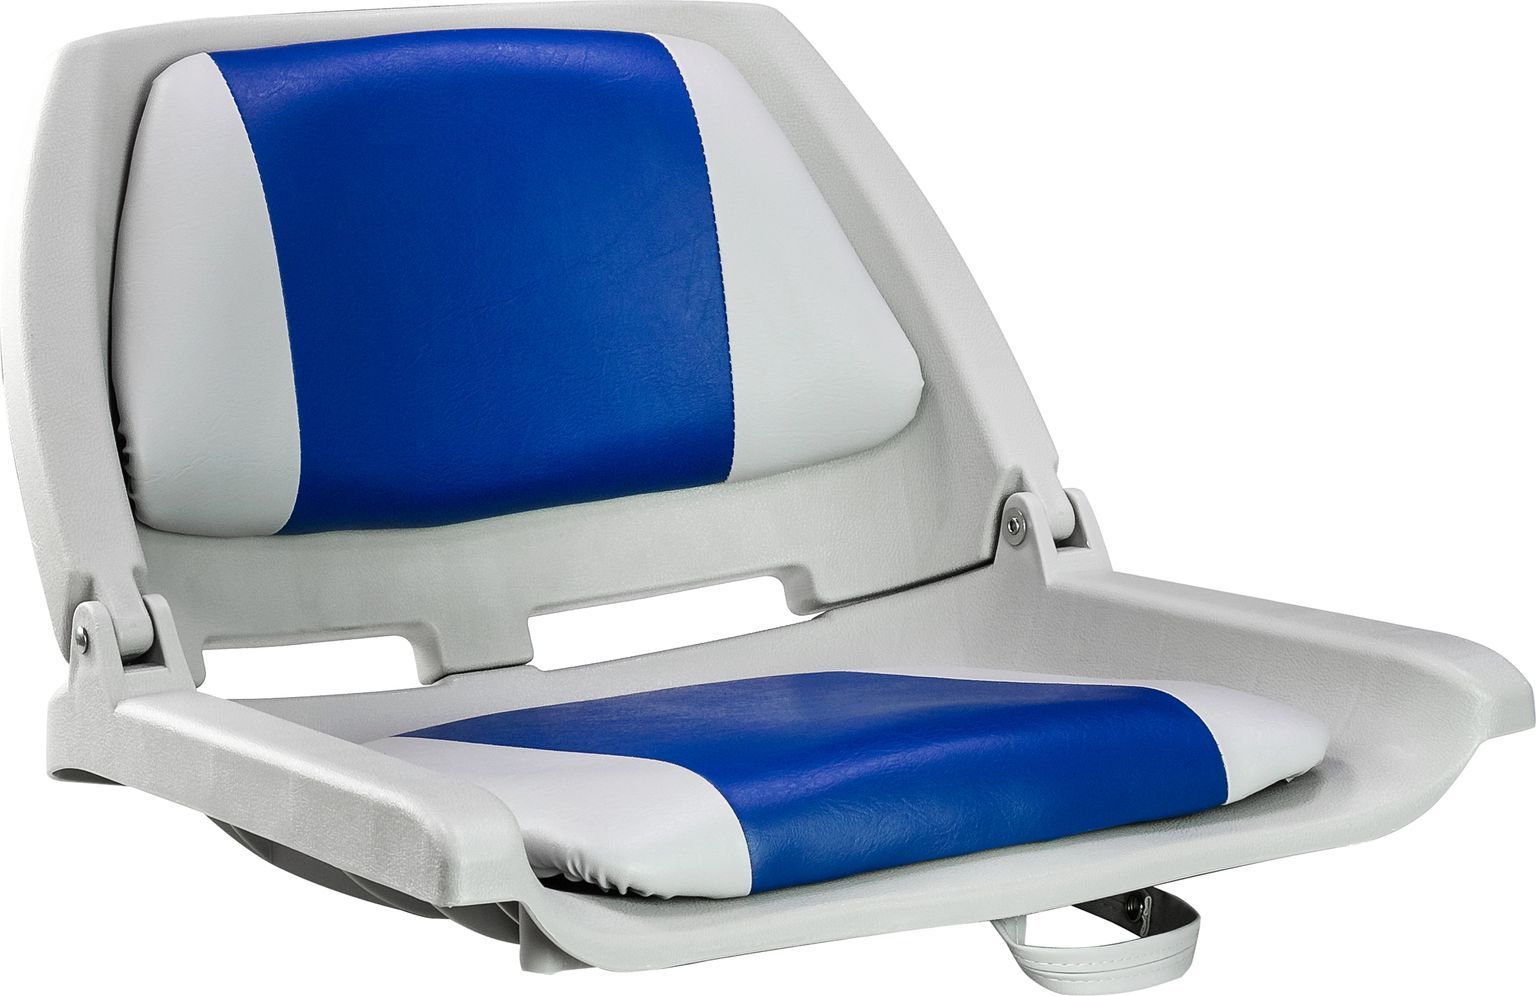 Кресло пластмассовое складное с подложкой Molded Fold-Down Boat Seat,серый/голубой 75109GB светильник mag flat fold 45 s805 24w day4000 wh 100 deg 24v arlight ip20 металл 3 года